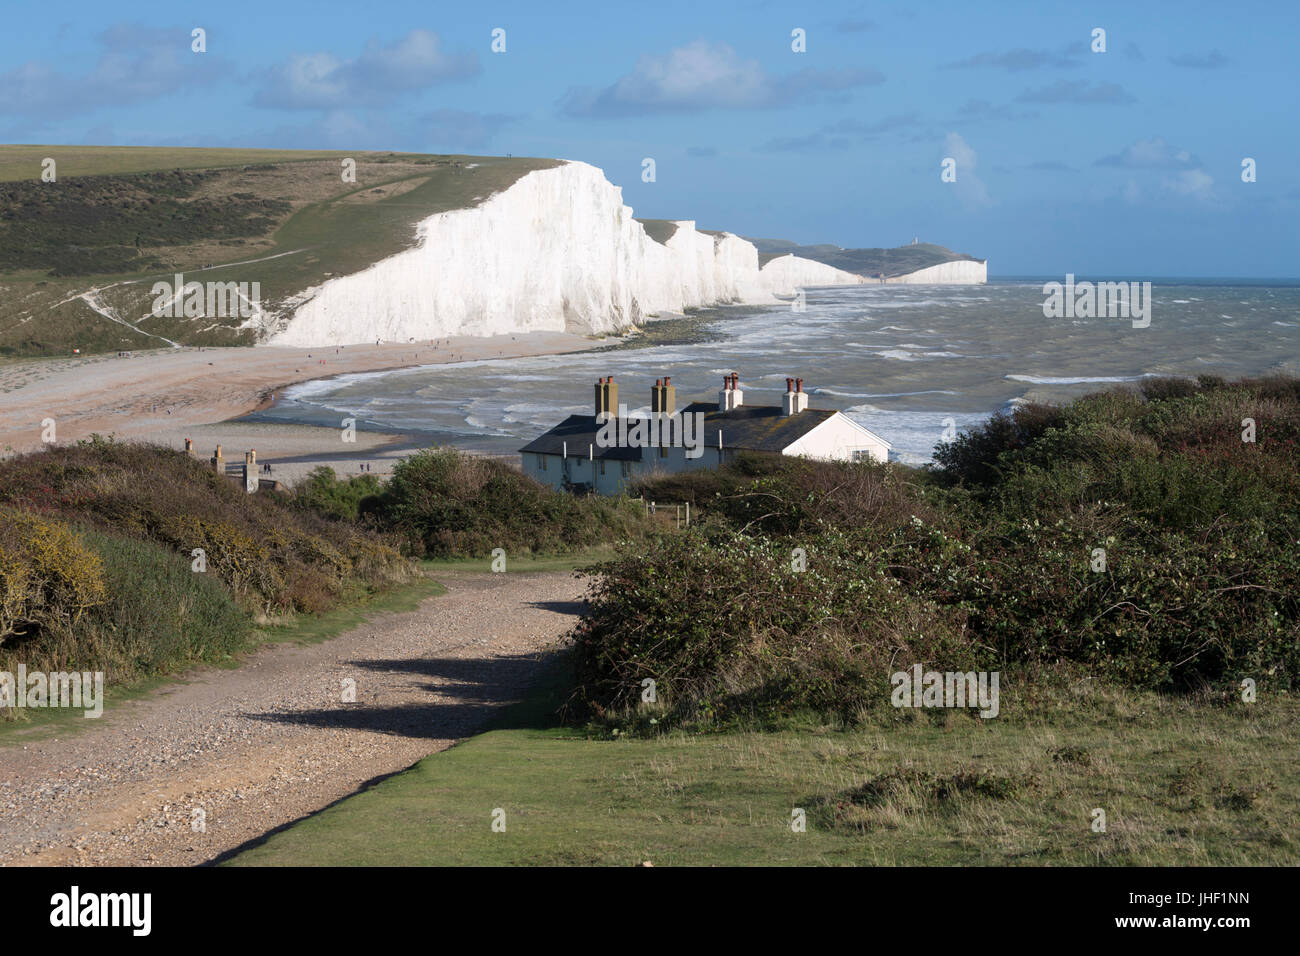 Sieben Schwestern und Beachy Head, Seaford, East Sussex, England, Vereinigtes Königreich, Europa Stockfoto